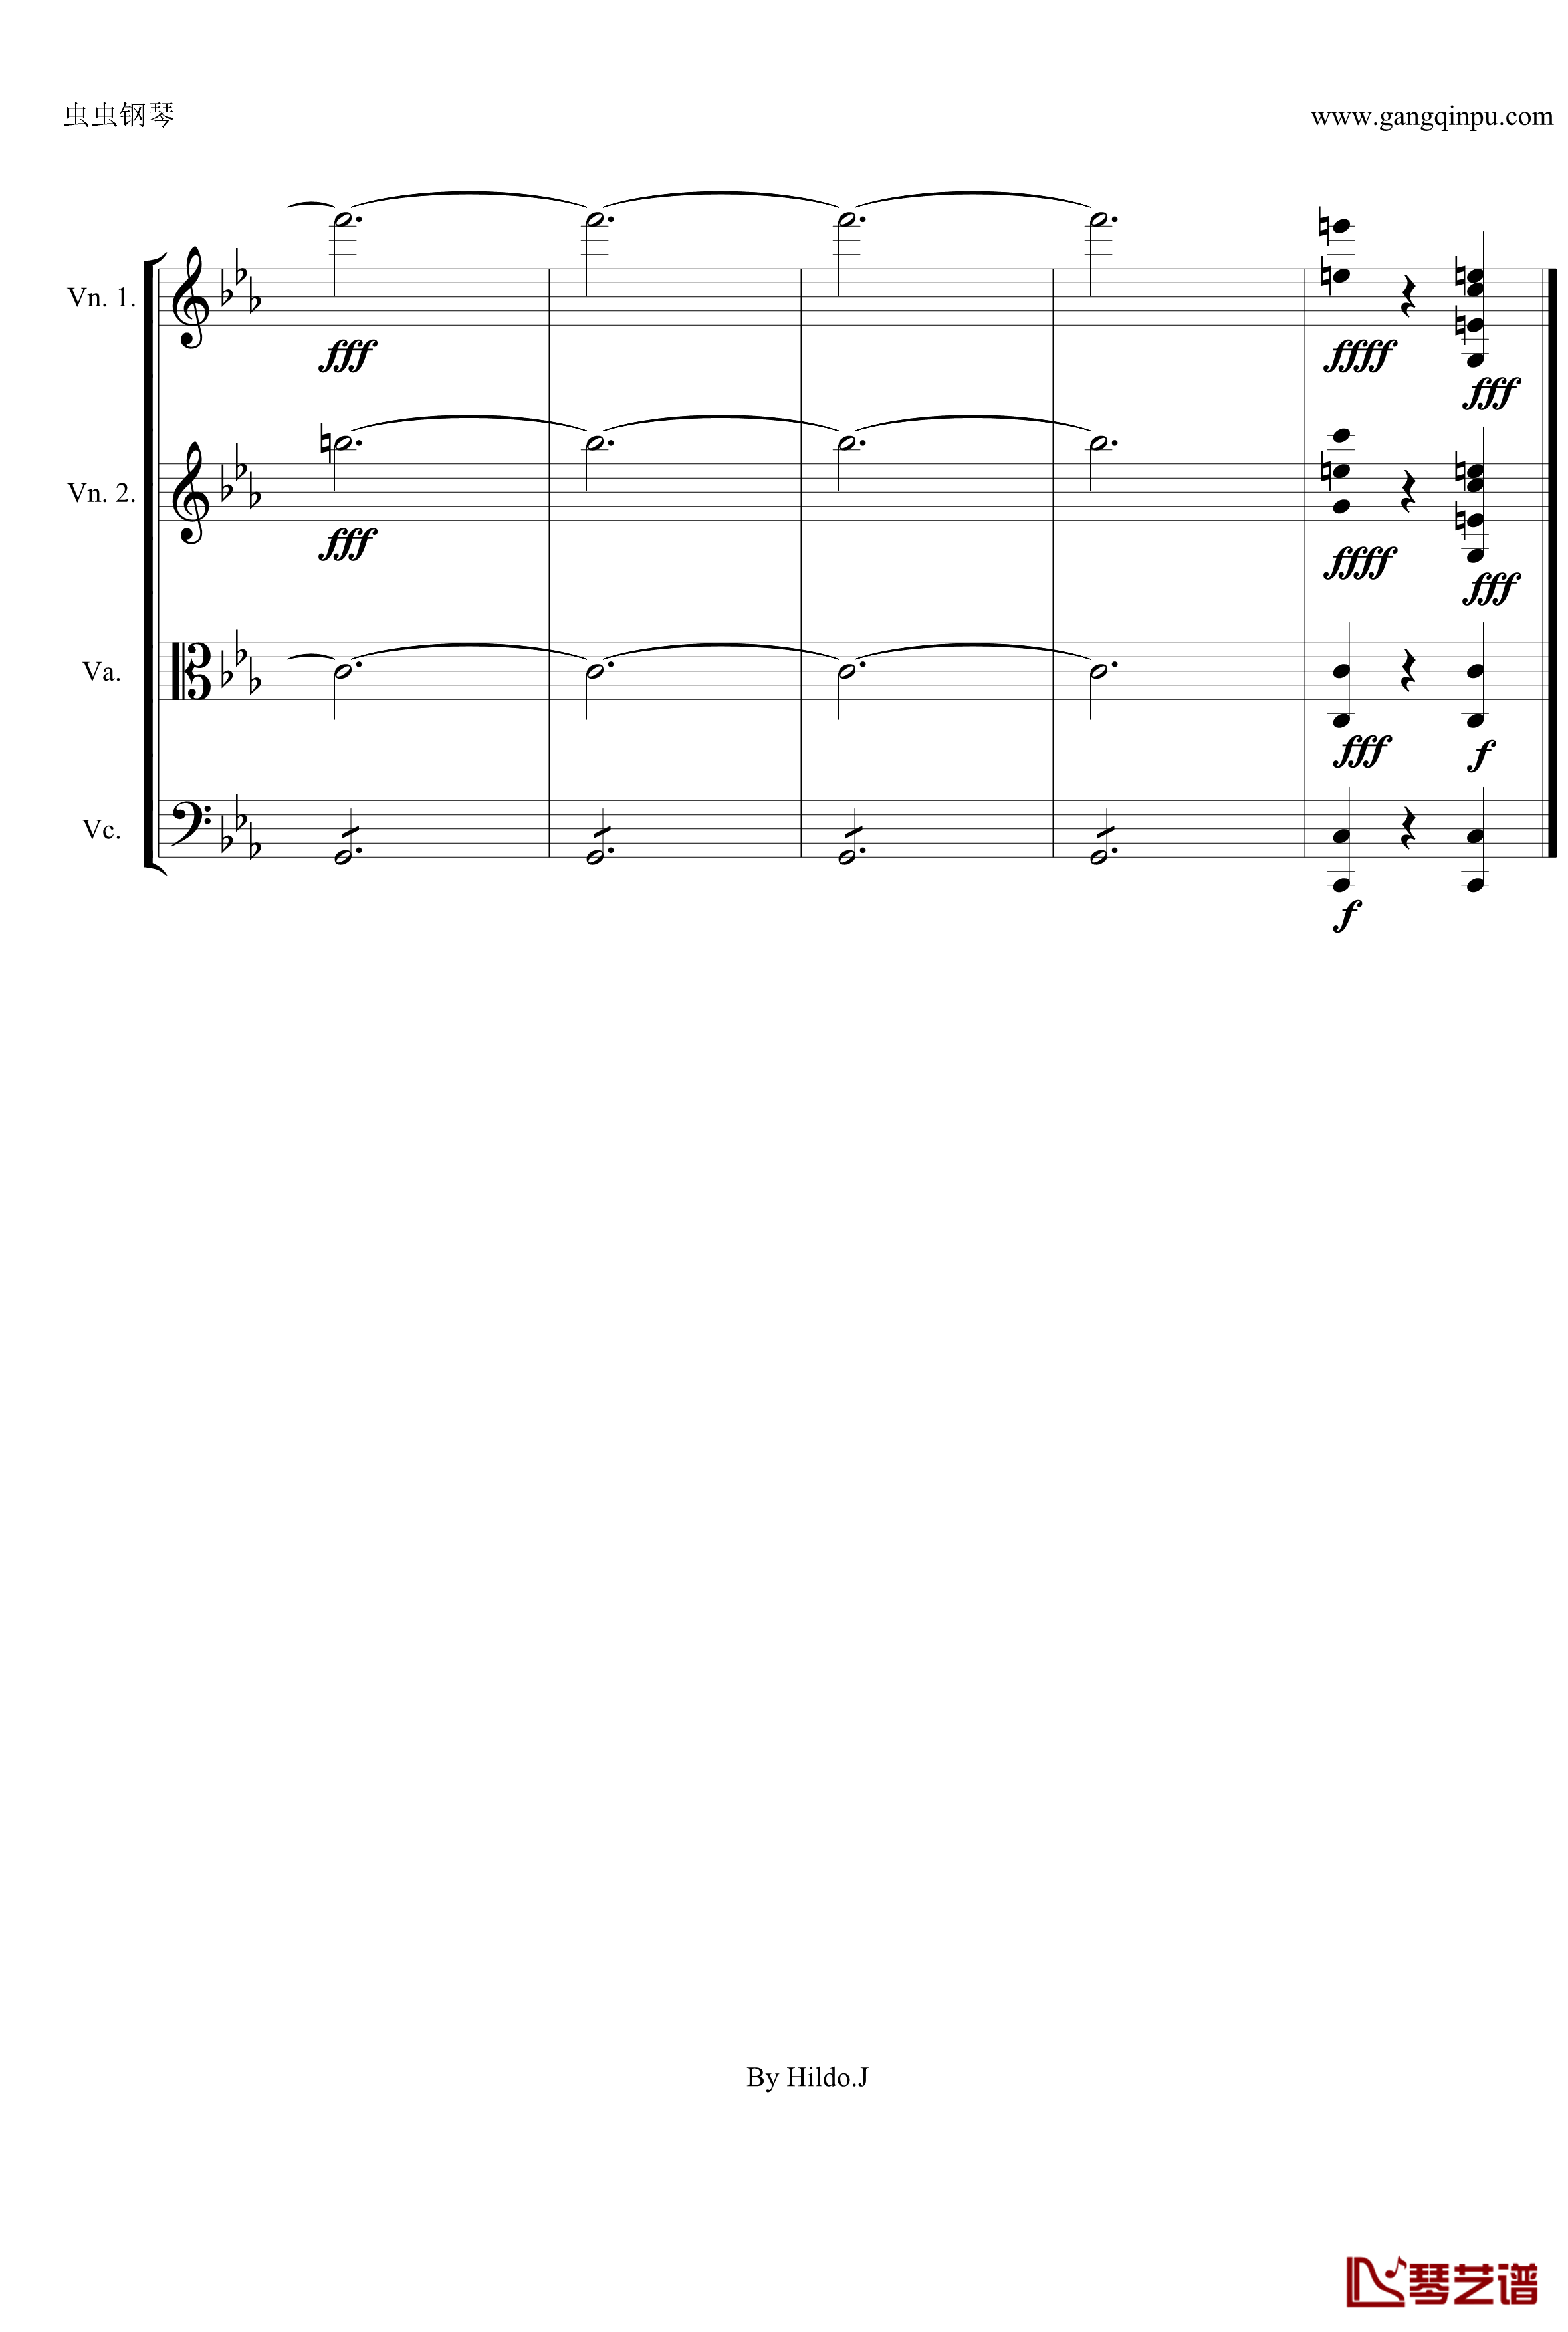 命运交响曲第三乐章钢琴谱-弦乐版-贝多芬-beethoven24